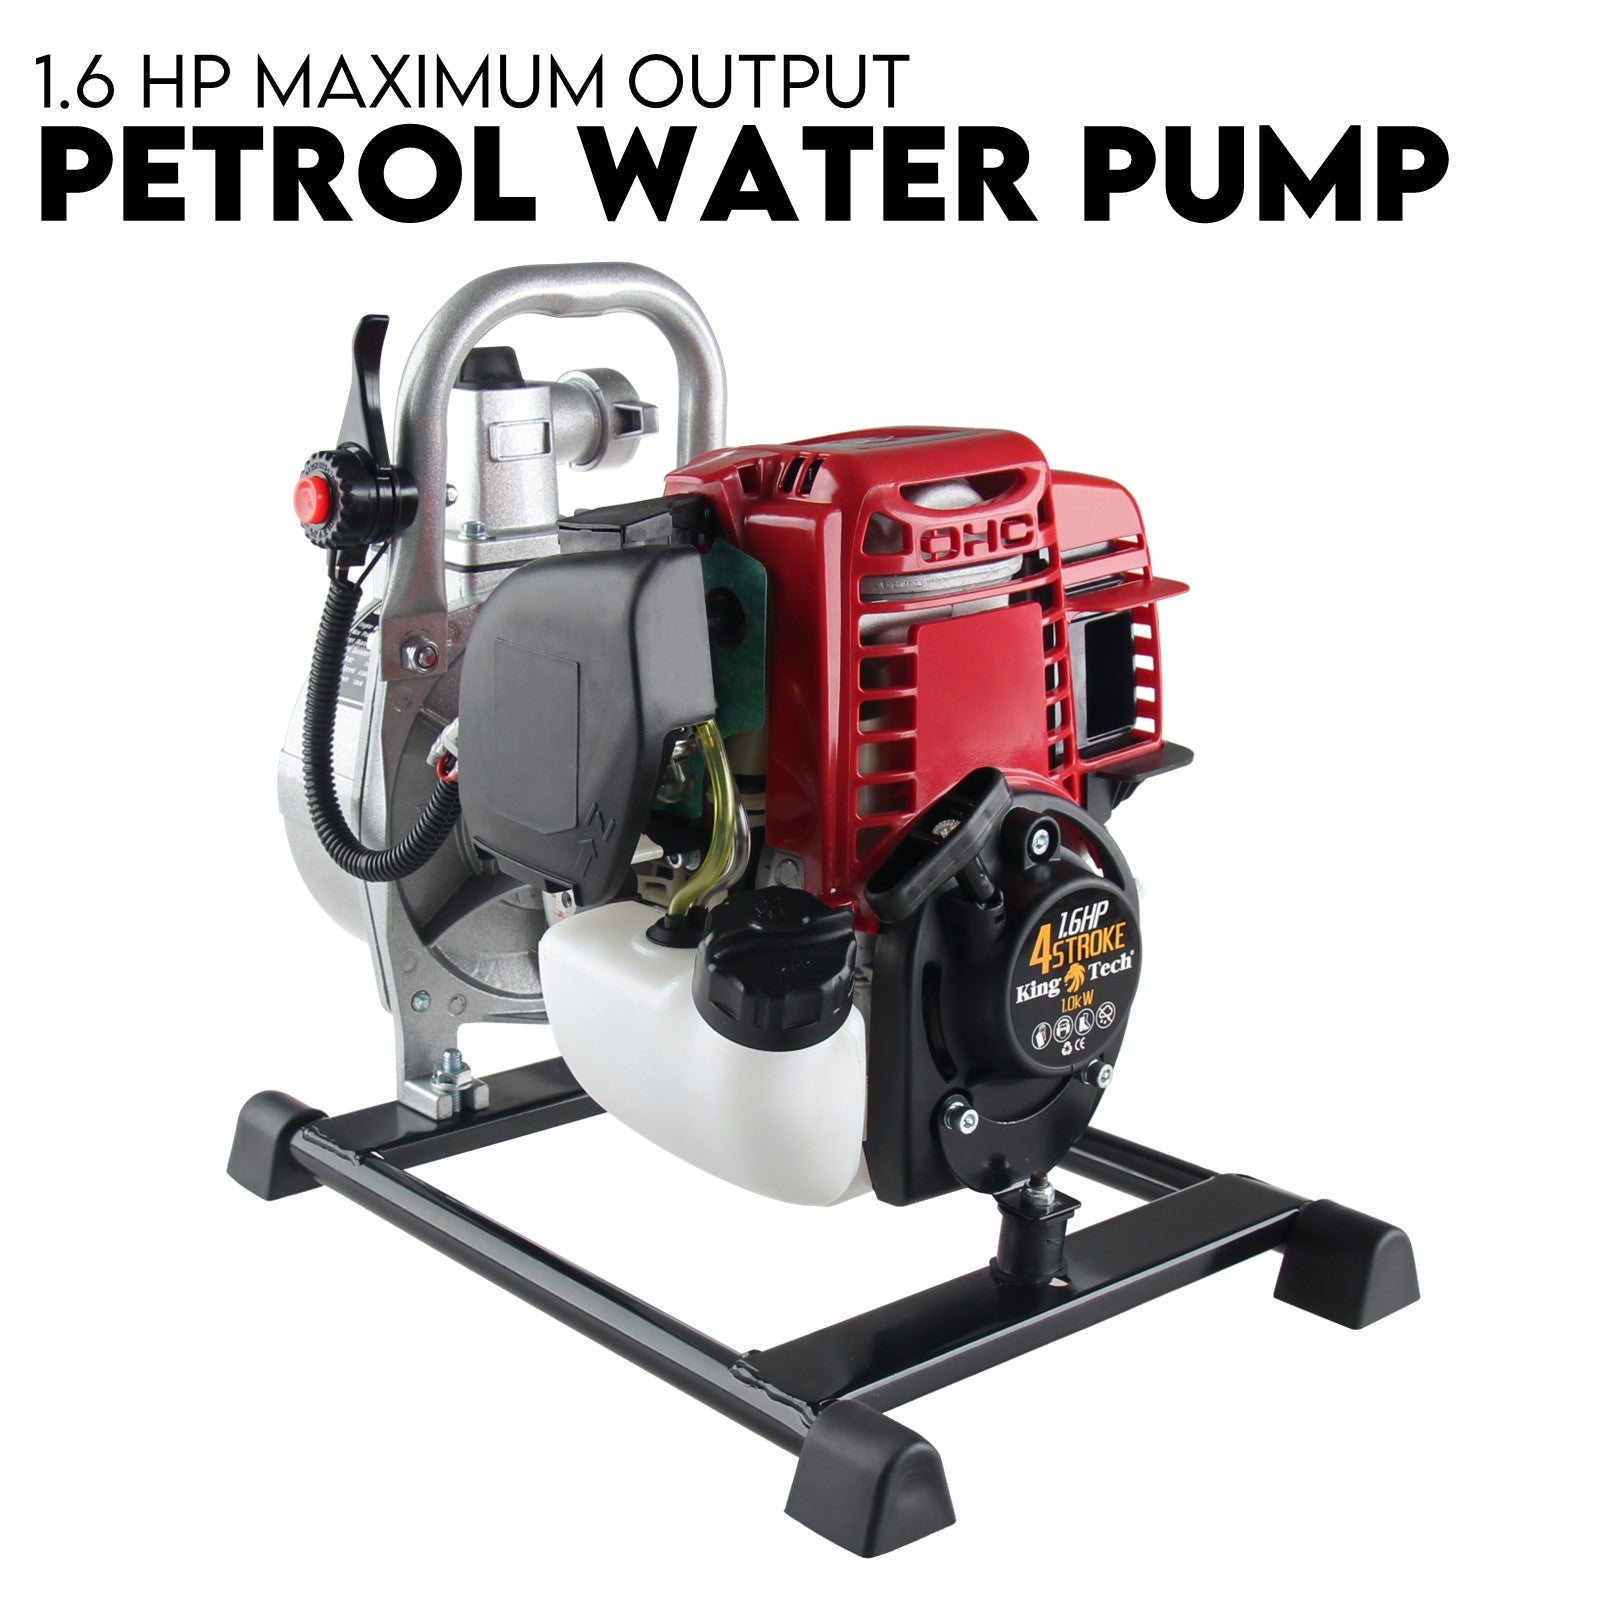 Water Pump - Portable Petrol 1.6 HP